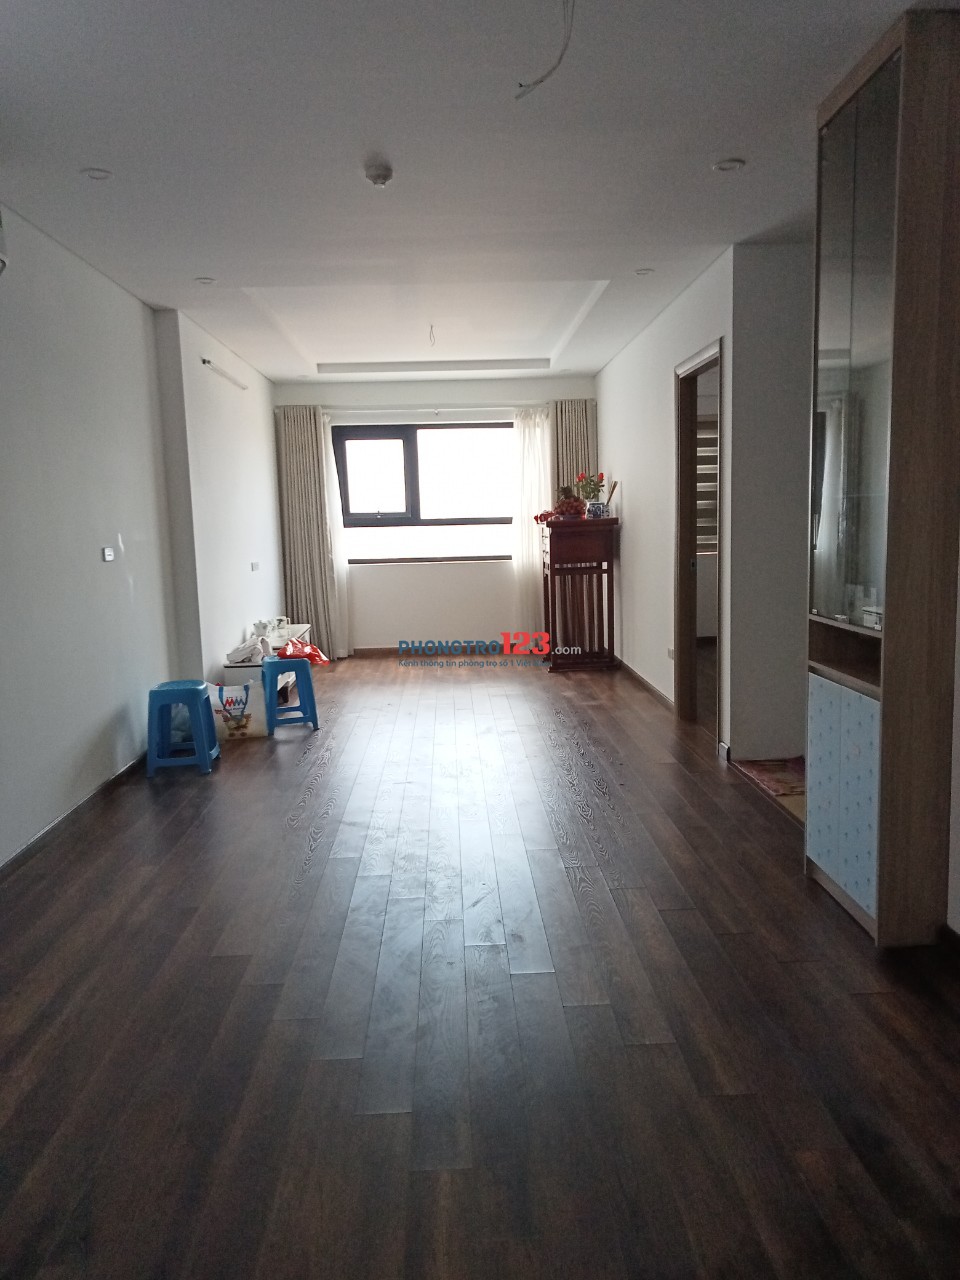 Cho thuê căn hộ 907 Chung cư Viễn Đông Star hoàn thiện nội thất, DT 87m2, 2 ngủ, 2vs, hướng Đông